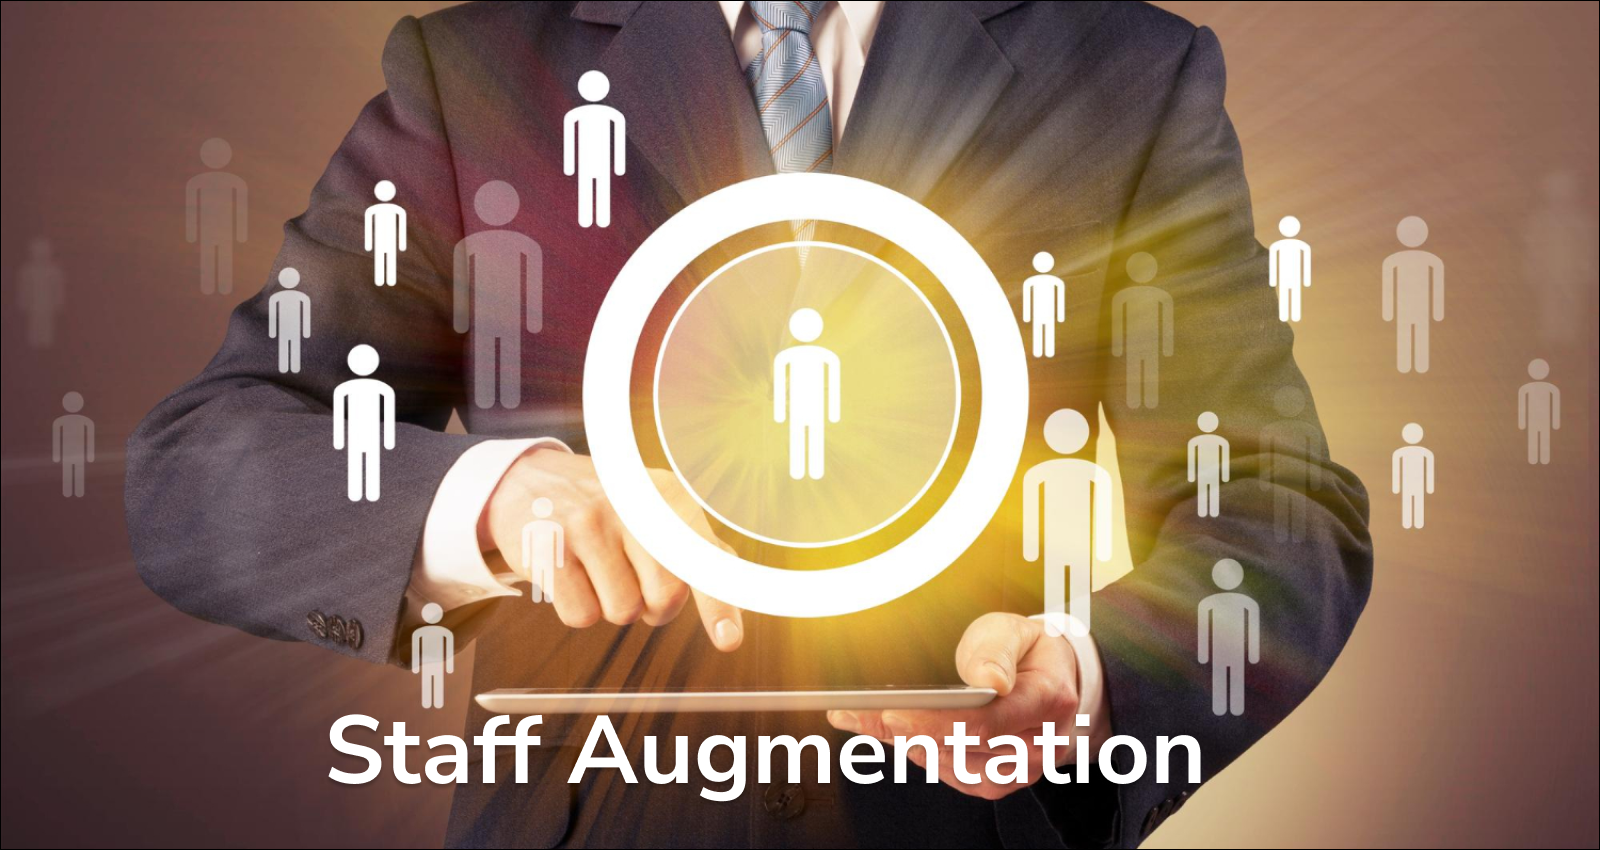 Benefits of Staff Augmentation, Staff Training, Staff Augmentation.